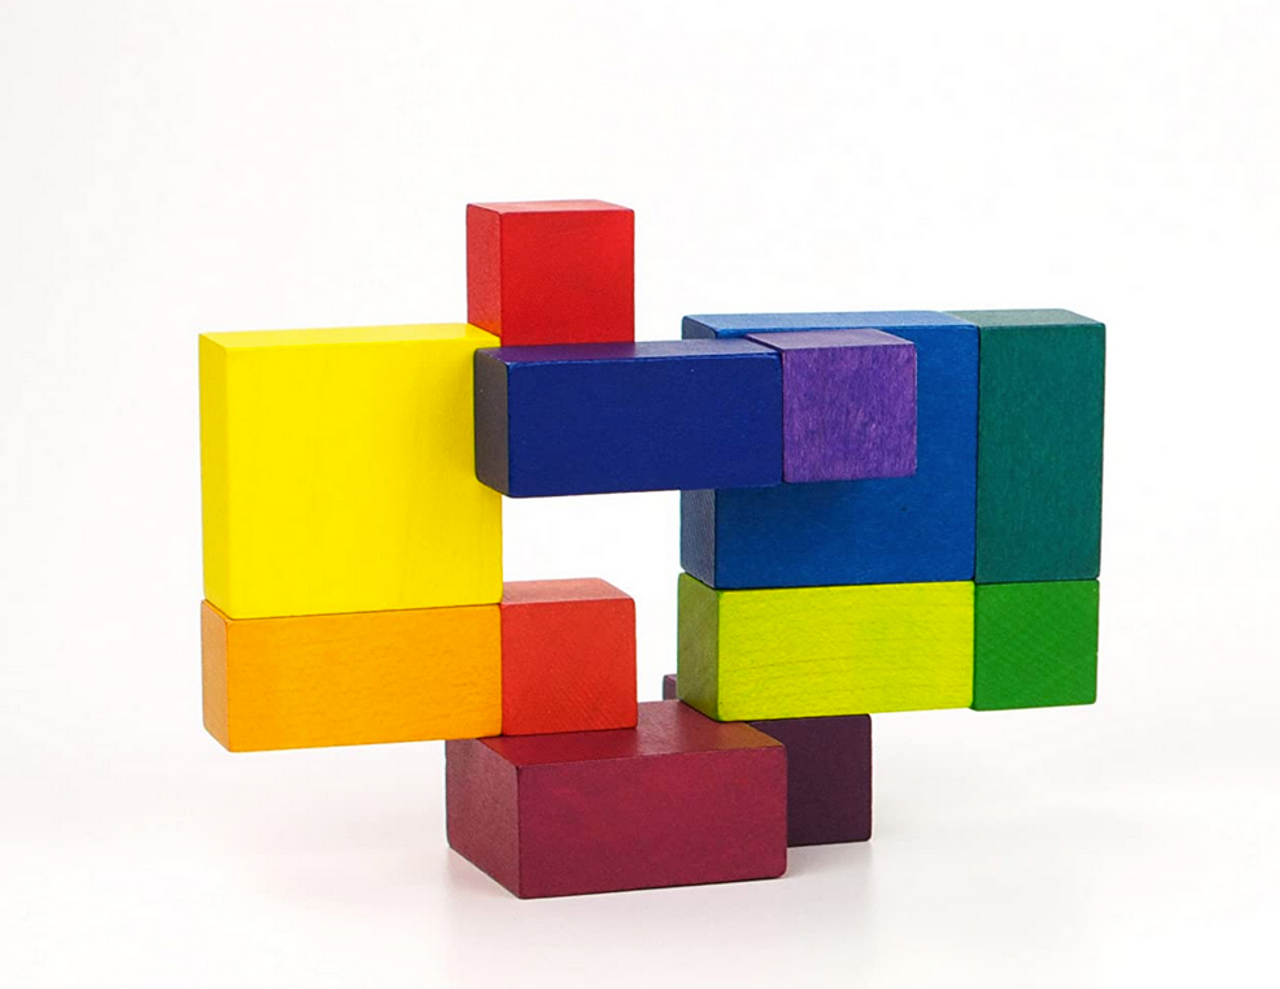 Pastel Puzzle Cubes 12ct